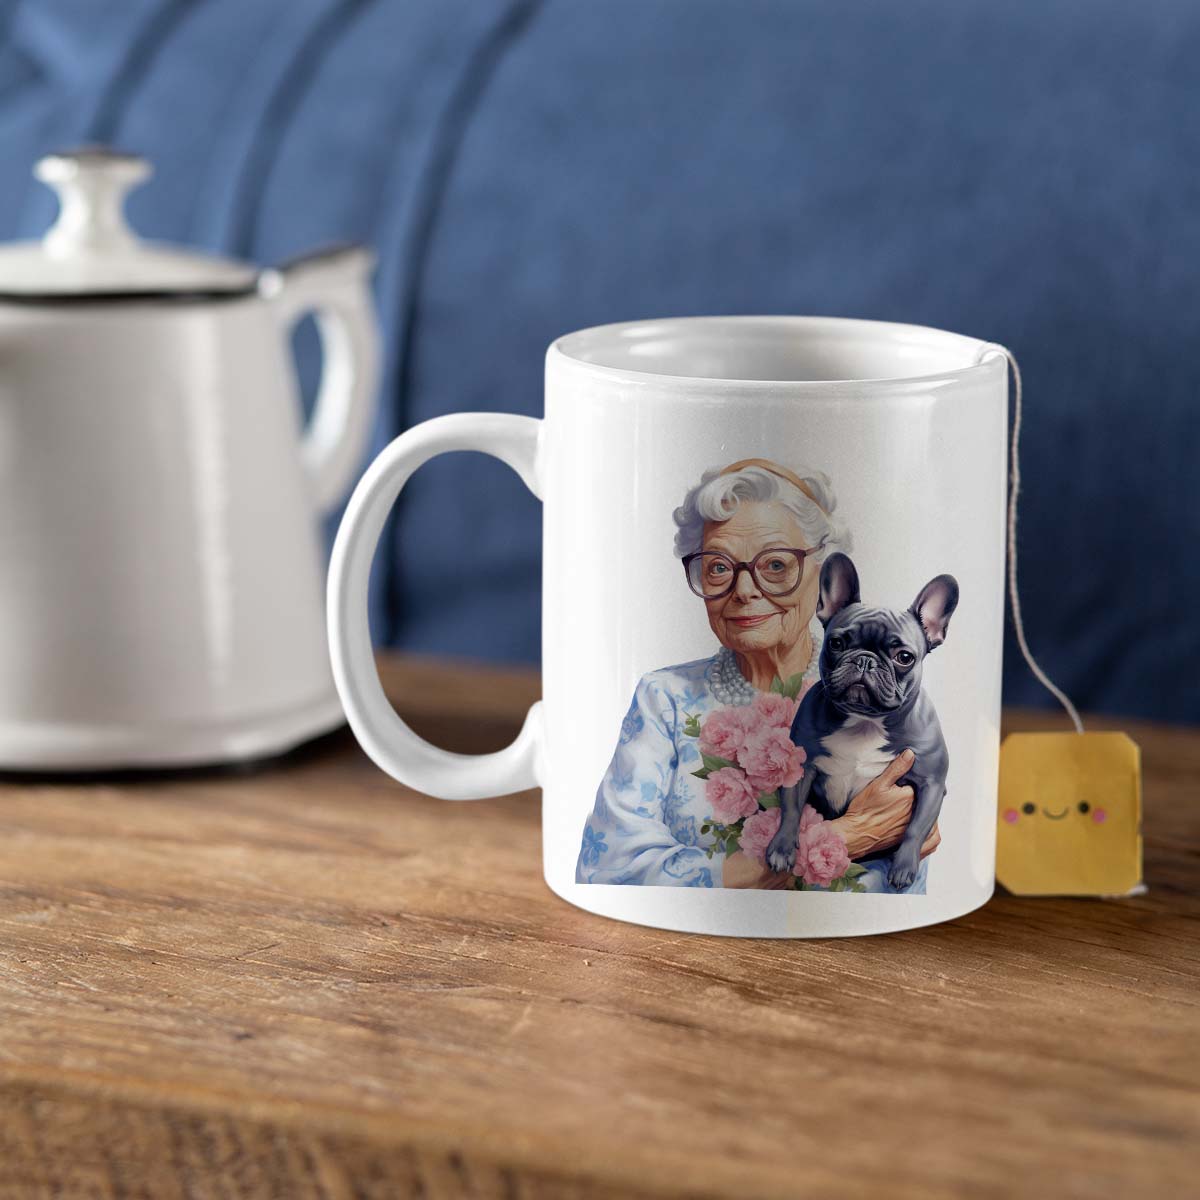 Custom Dog Mom Mug, Grandma and French Bulldog Love Ceramic Mug, Dog Owner Gift, Dog Lover Mug, Gift For Dog Mom, Gift For Dog Owner, Dog Coffee Mugs, Dog Grandma Coffee Mug, Mother's Day Gift